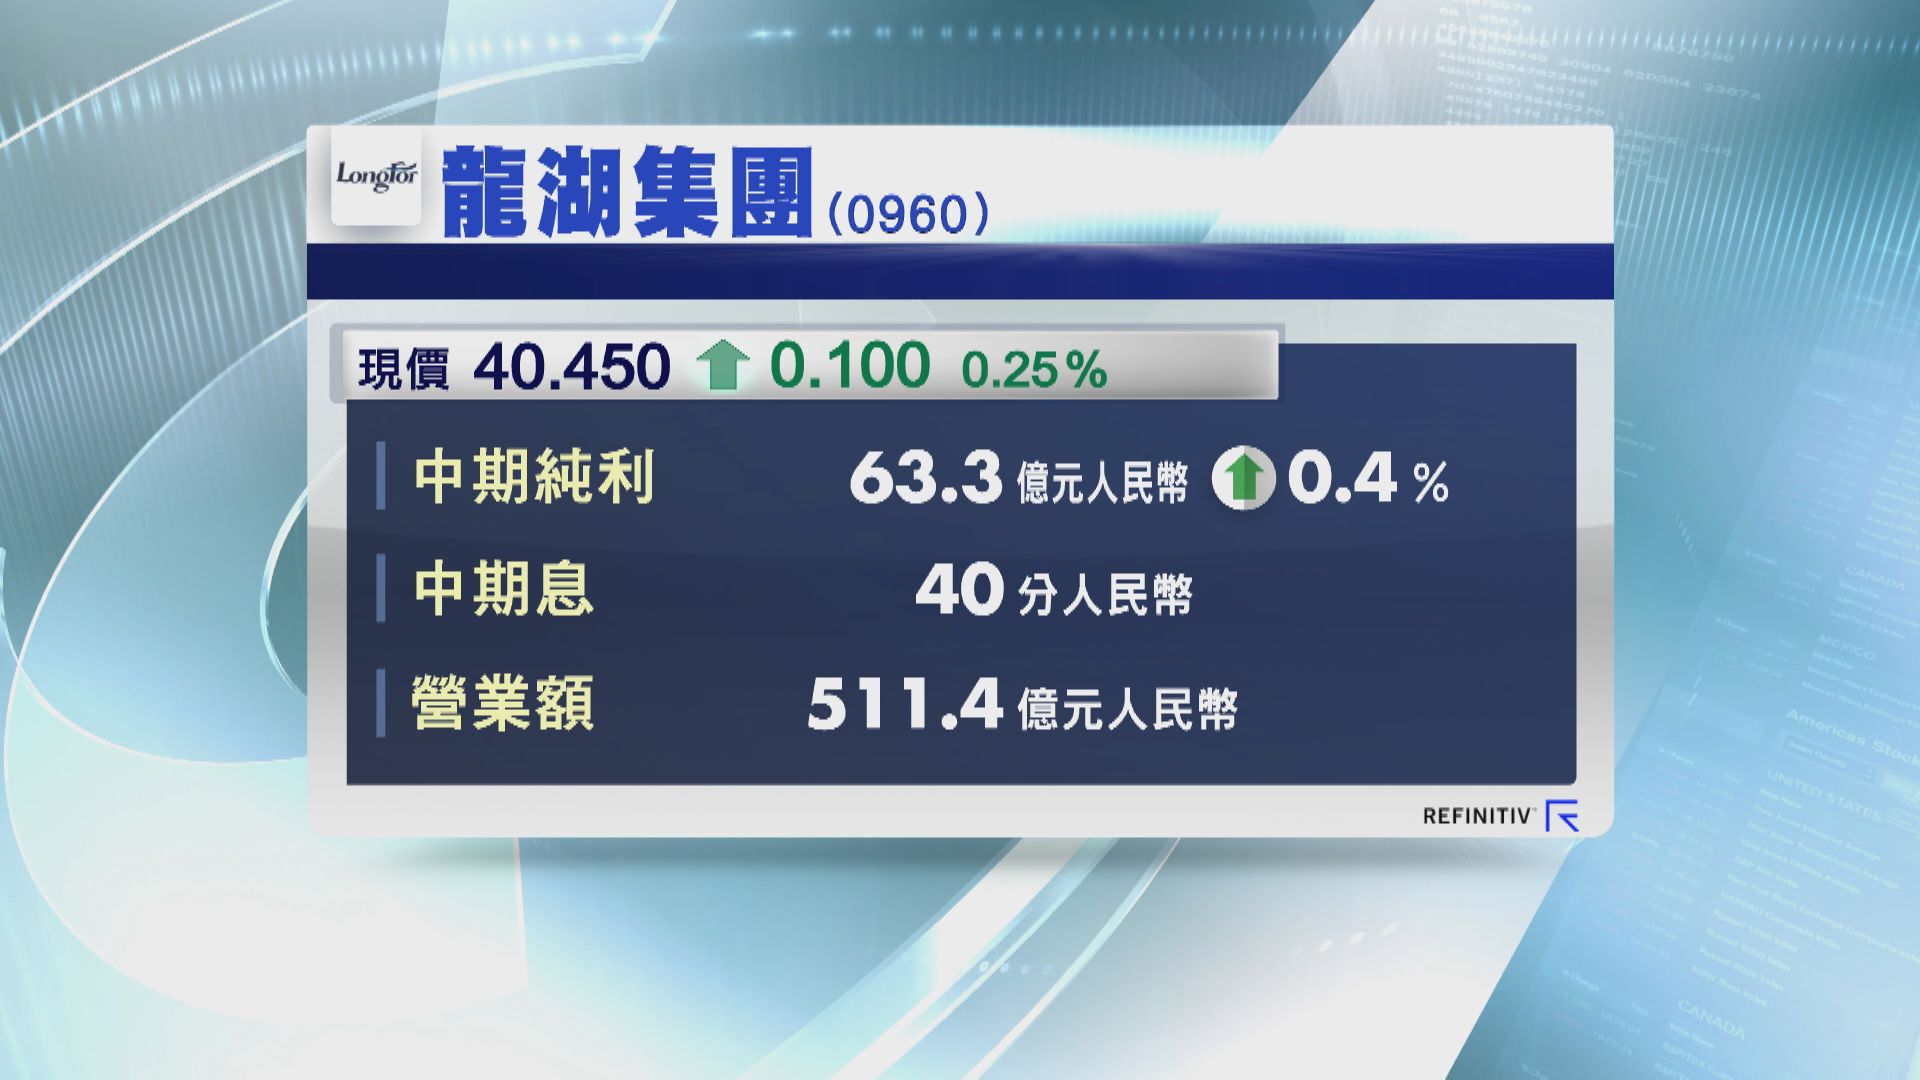 龍湖集團中期賺63億元人民幣 微升0.4%